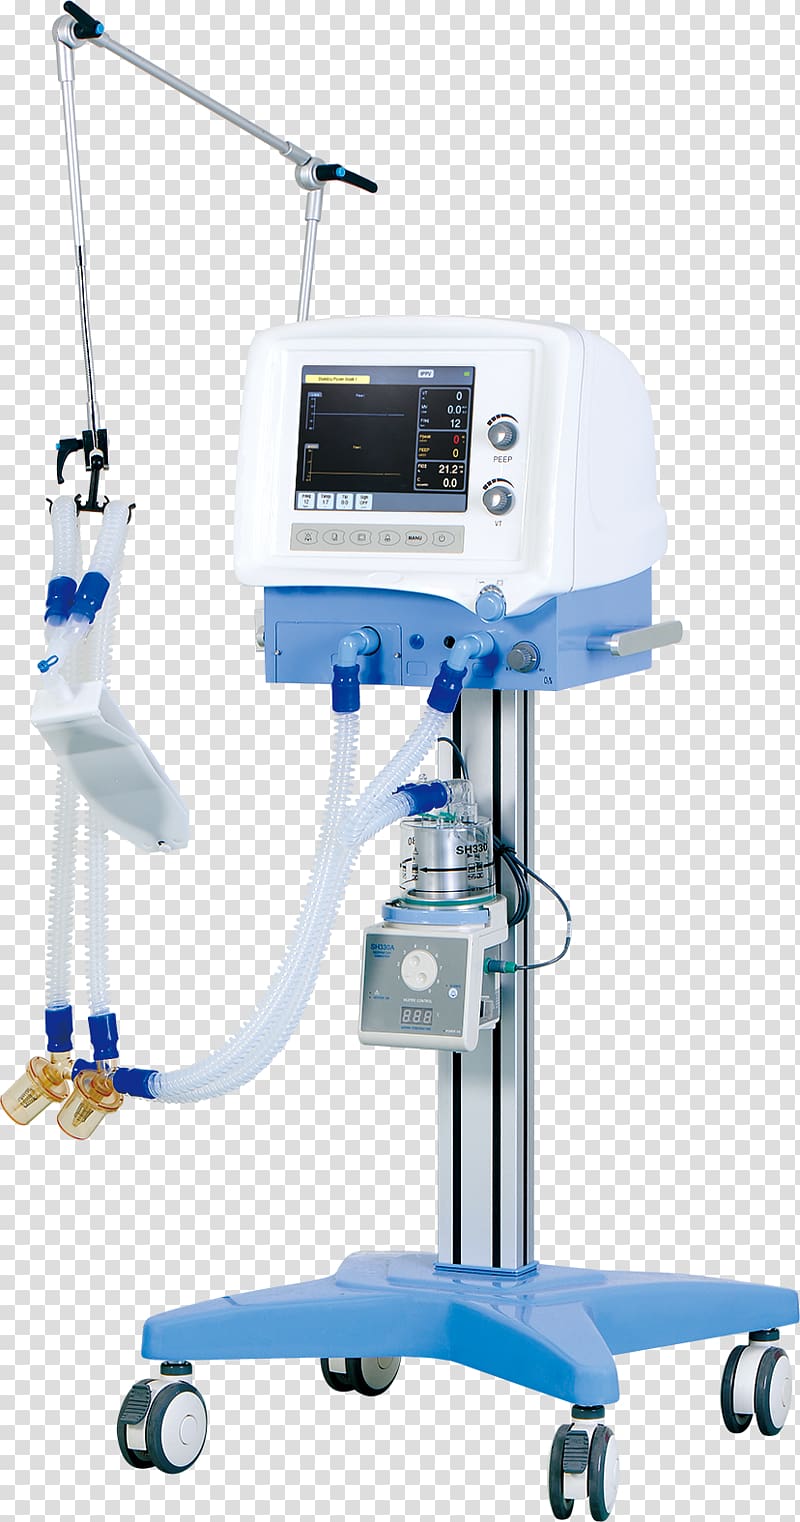 Medical Equipment Medical ventilator Mechanical ventilation Medicine Intensive care unit, others transparent background PNG clipart